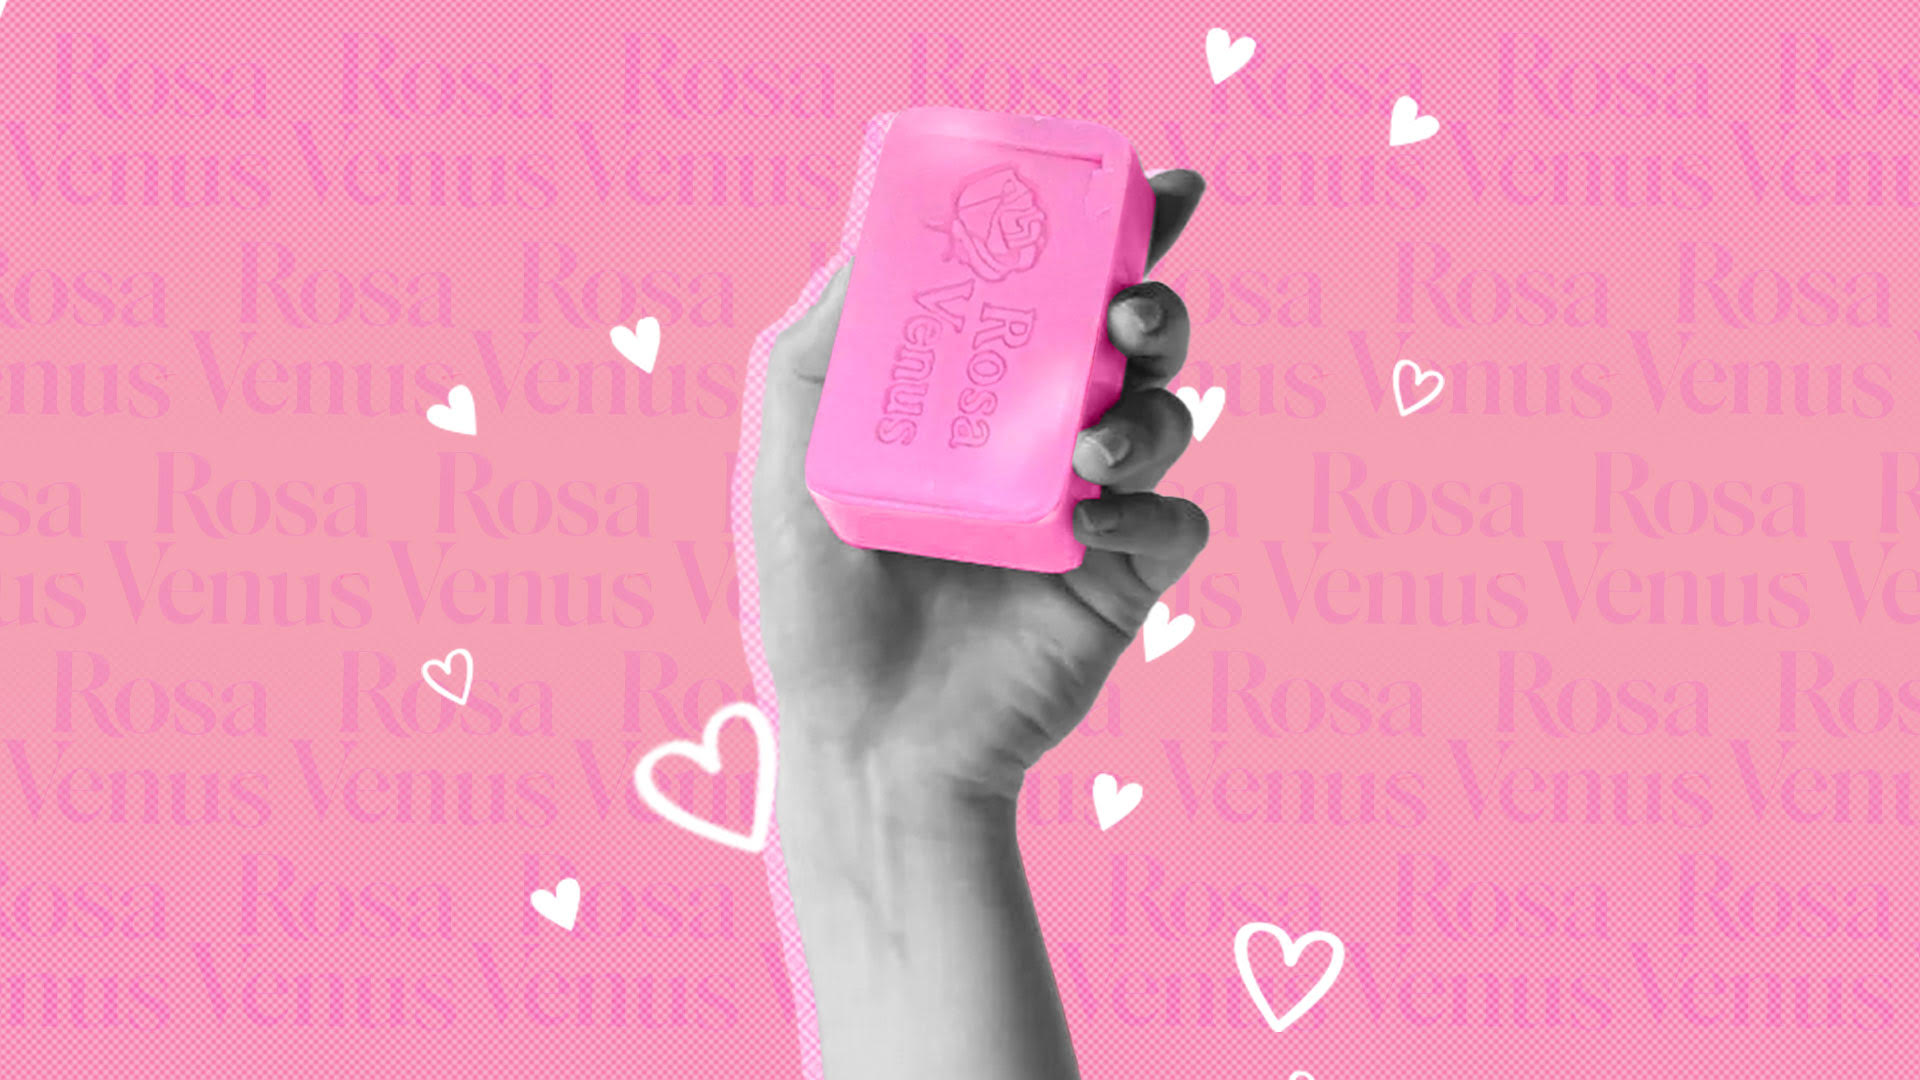 Rosa Venus, el “jabón chiquito” de los enamorados, su historia y cuáles son sus propiedades